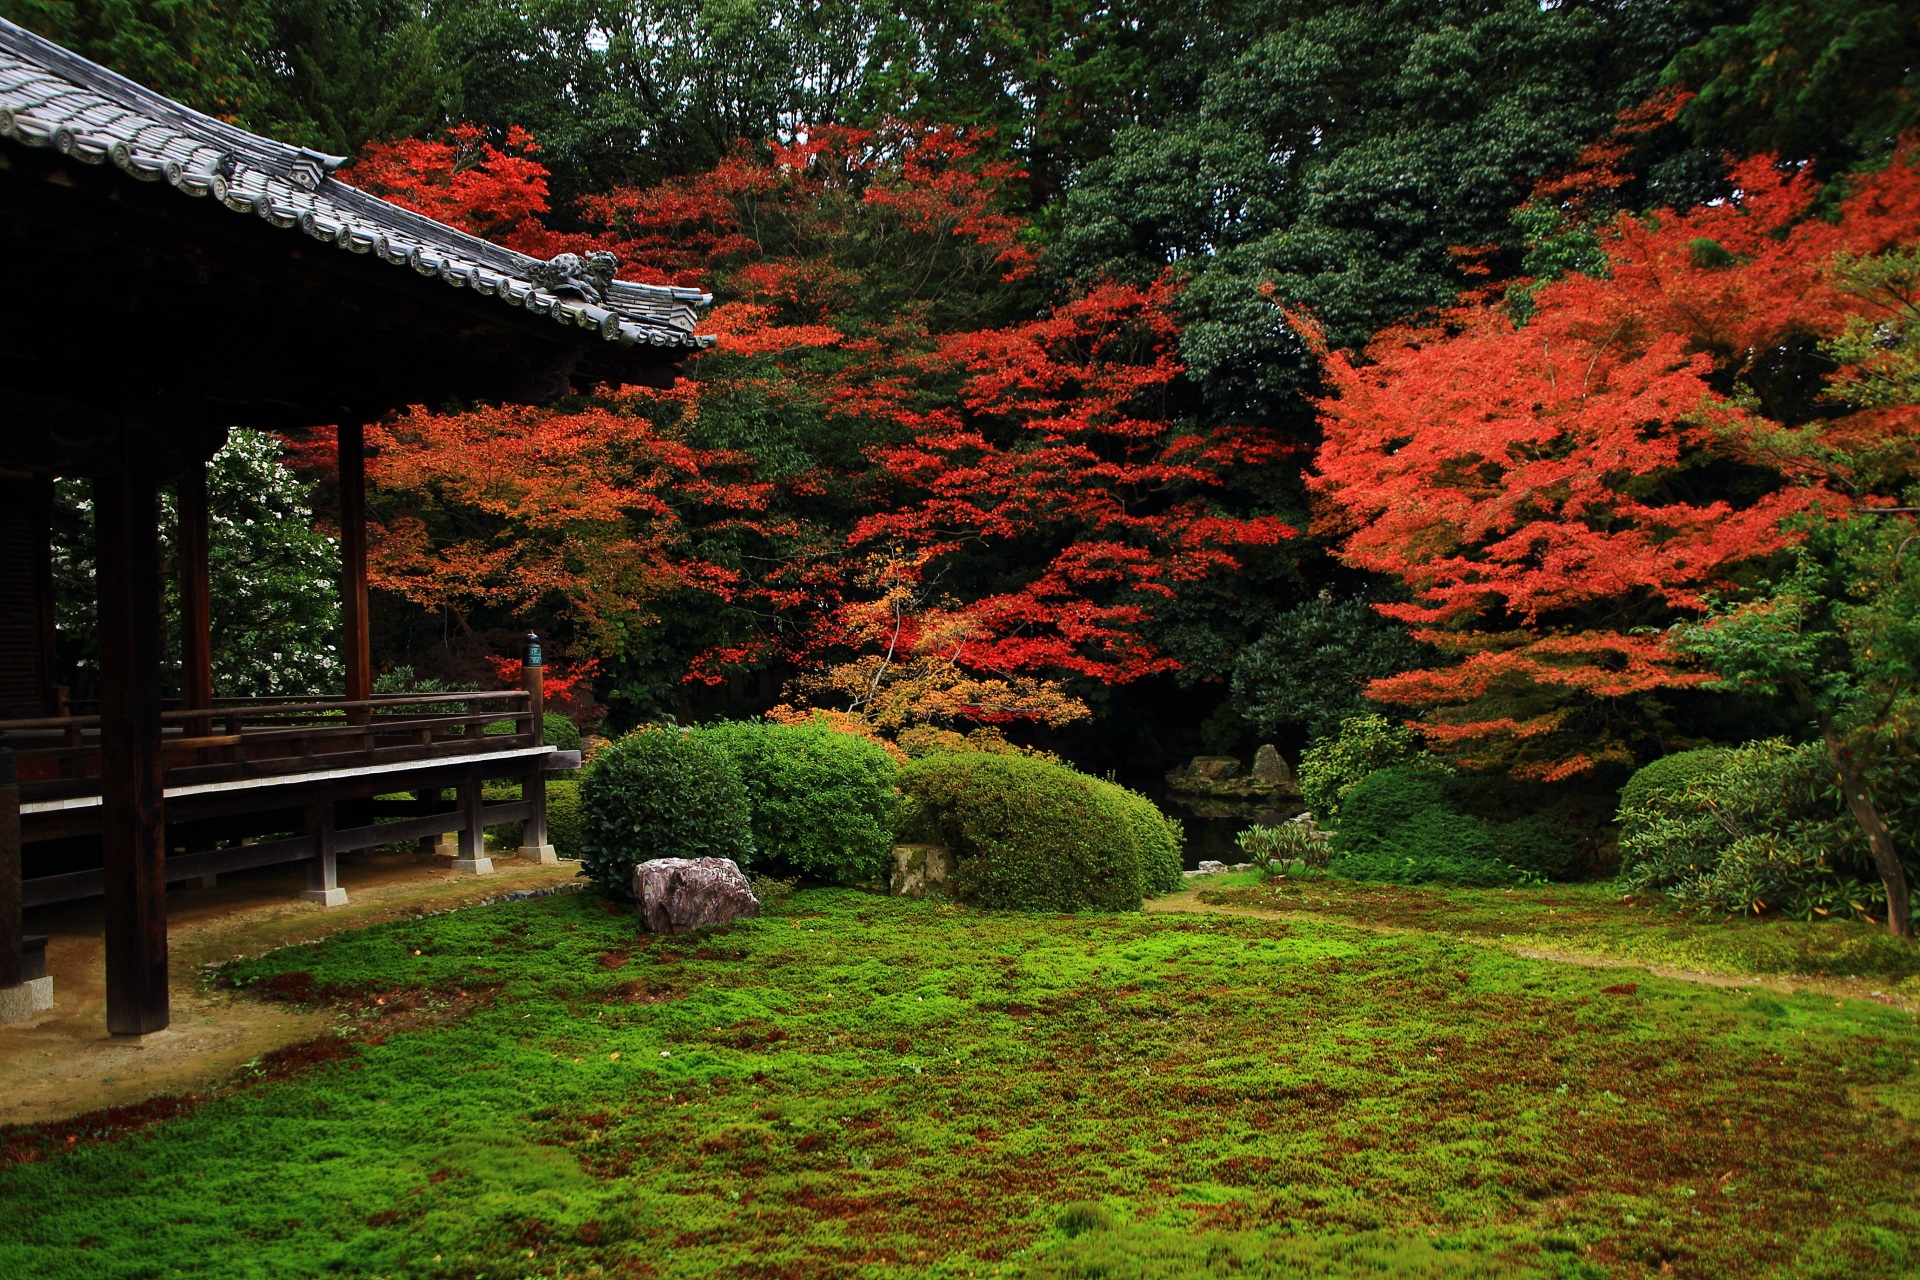 随心院横の背景の深い緑と苔の淡い緑に映える見事な紅葉